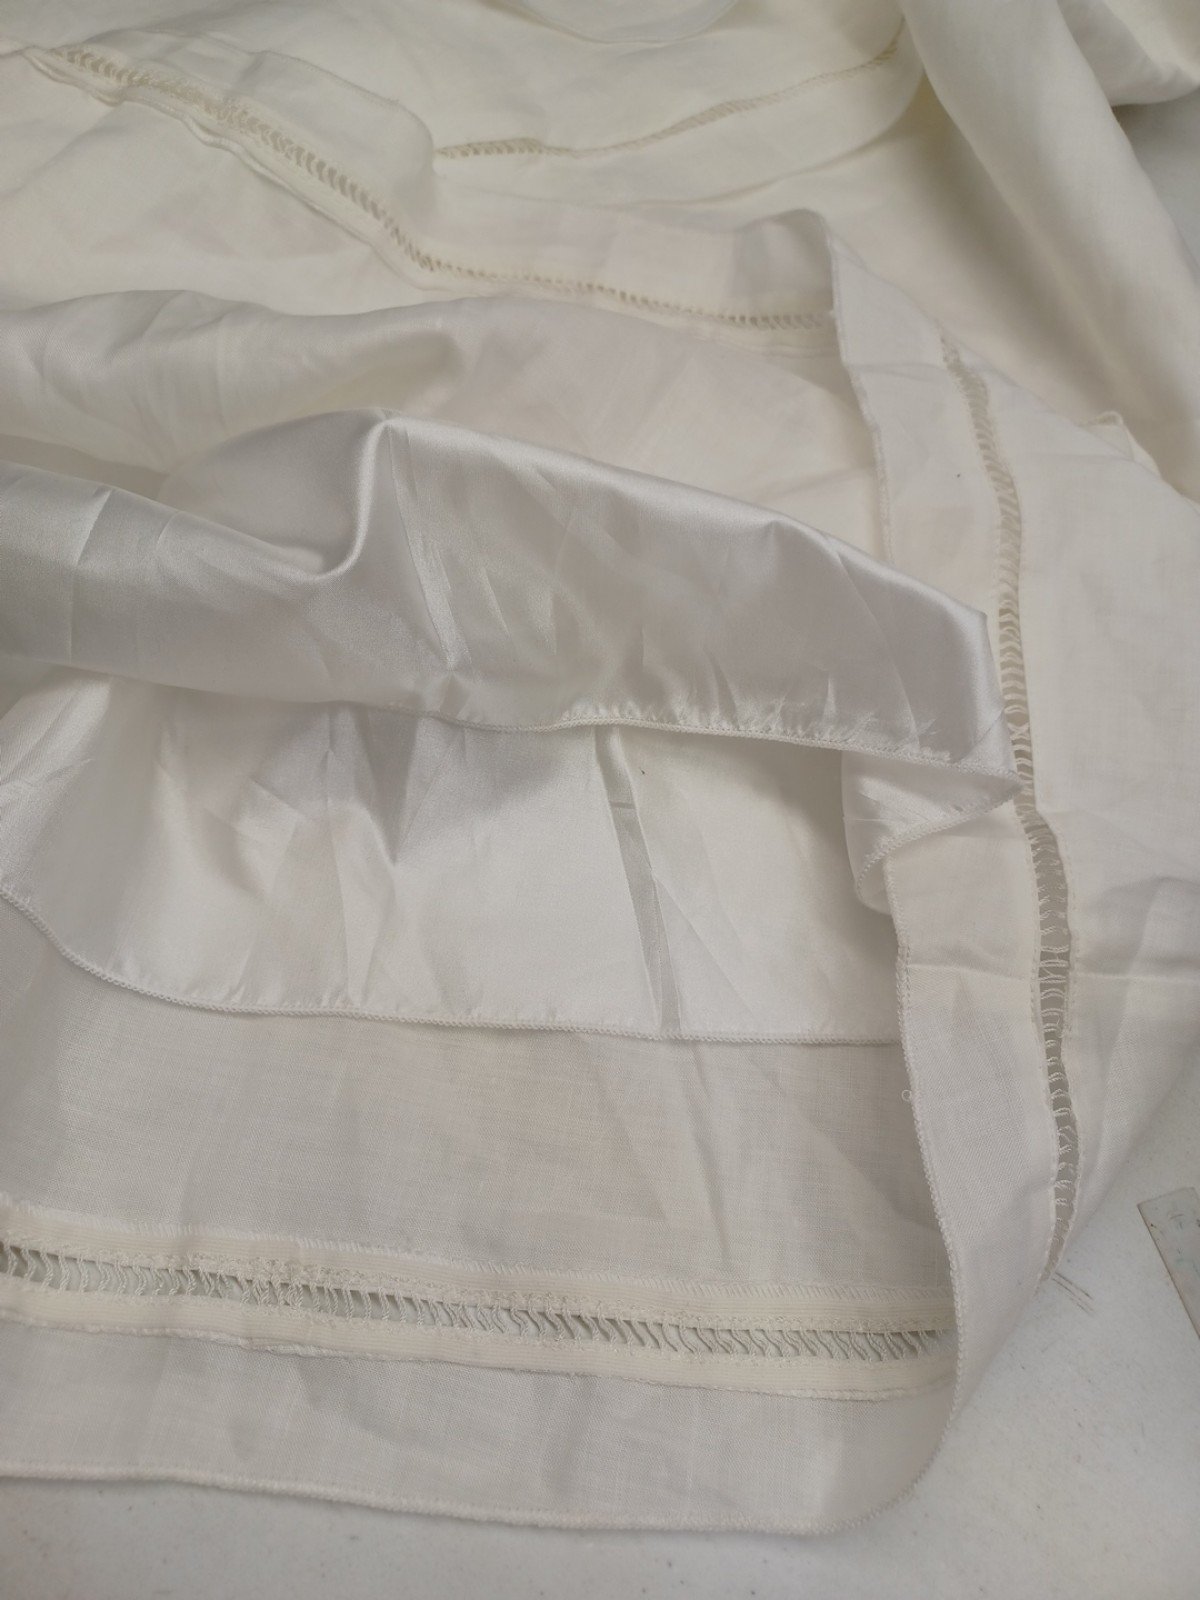 large discount Vtg Gasolino Plus Sz L 100% Linen White Maxi Skirt A-Line NWT $99.99 kCSxobVXR Counter Genuine 